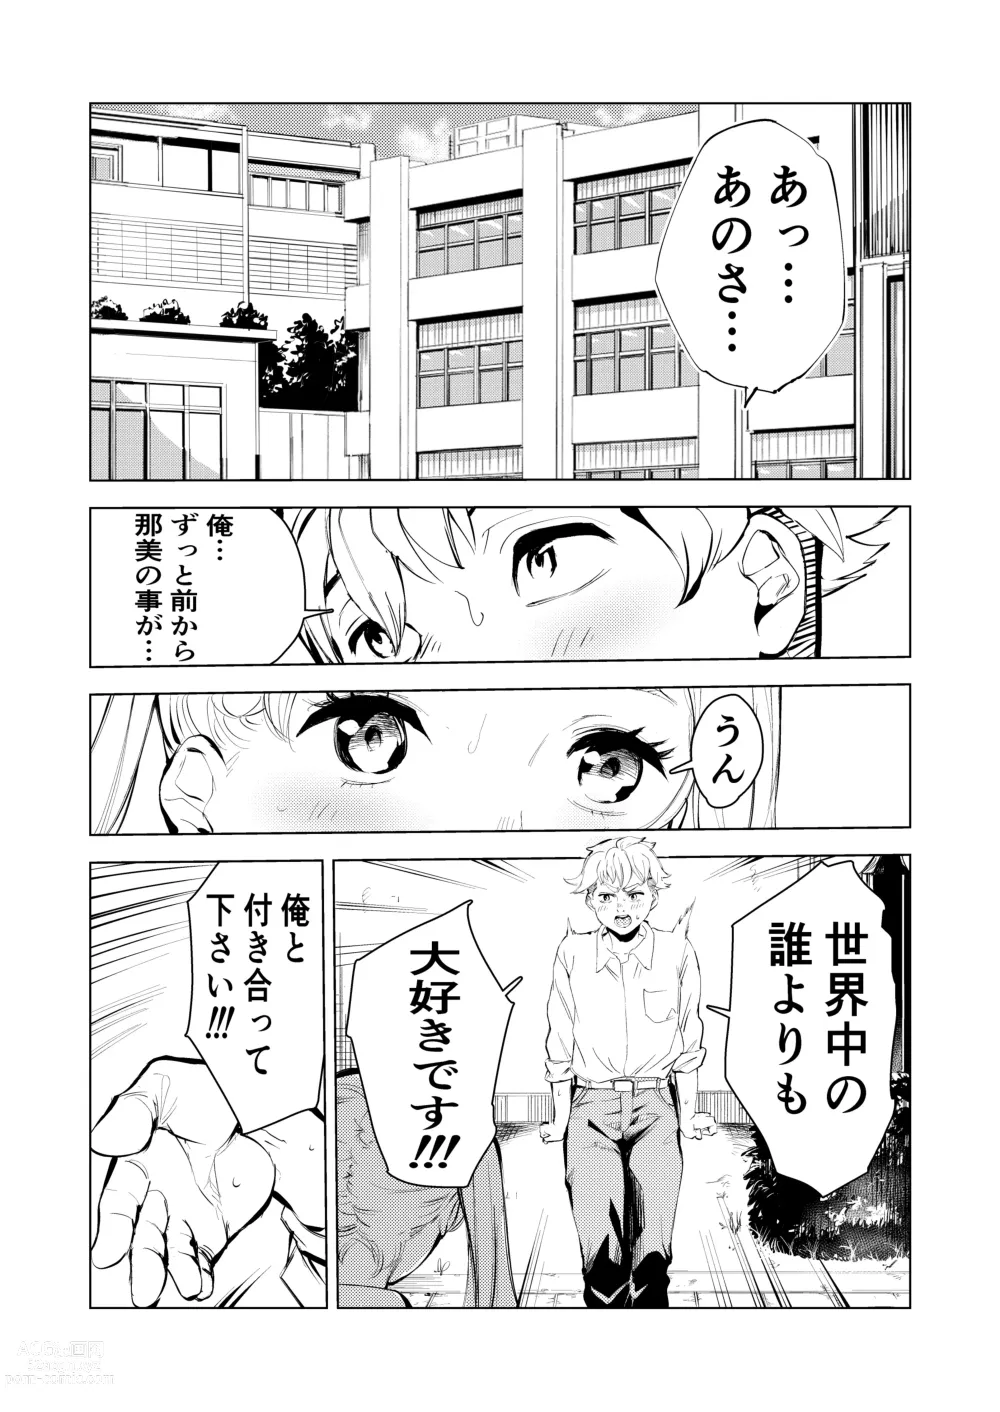 Page 2 of doujinshi 40-sai no Mahoutsukai 3